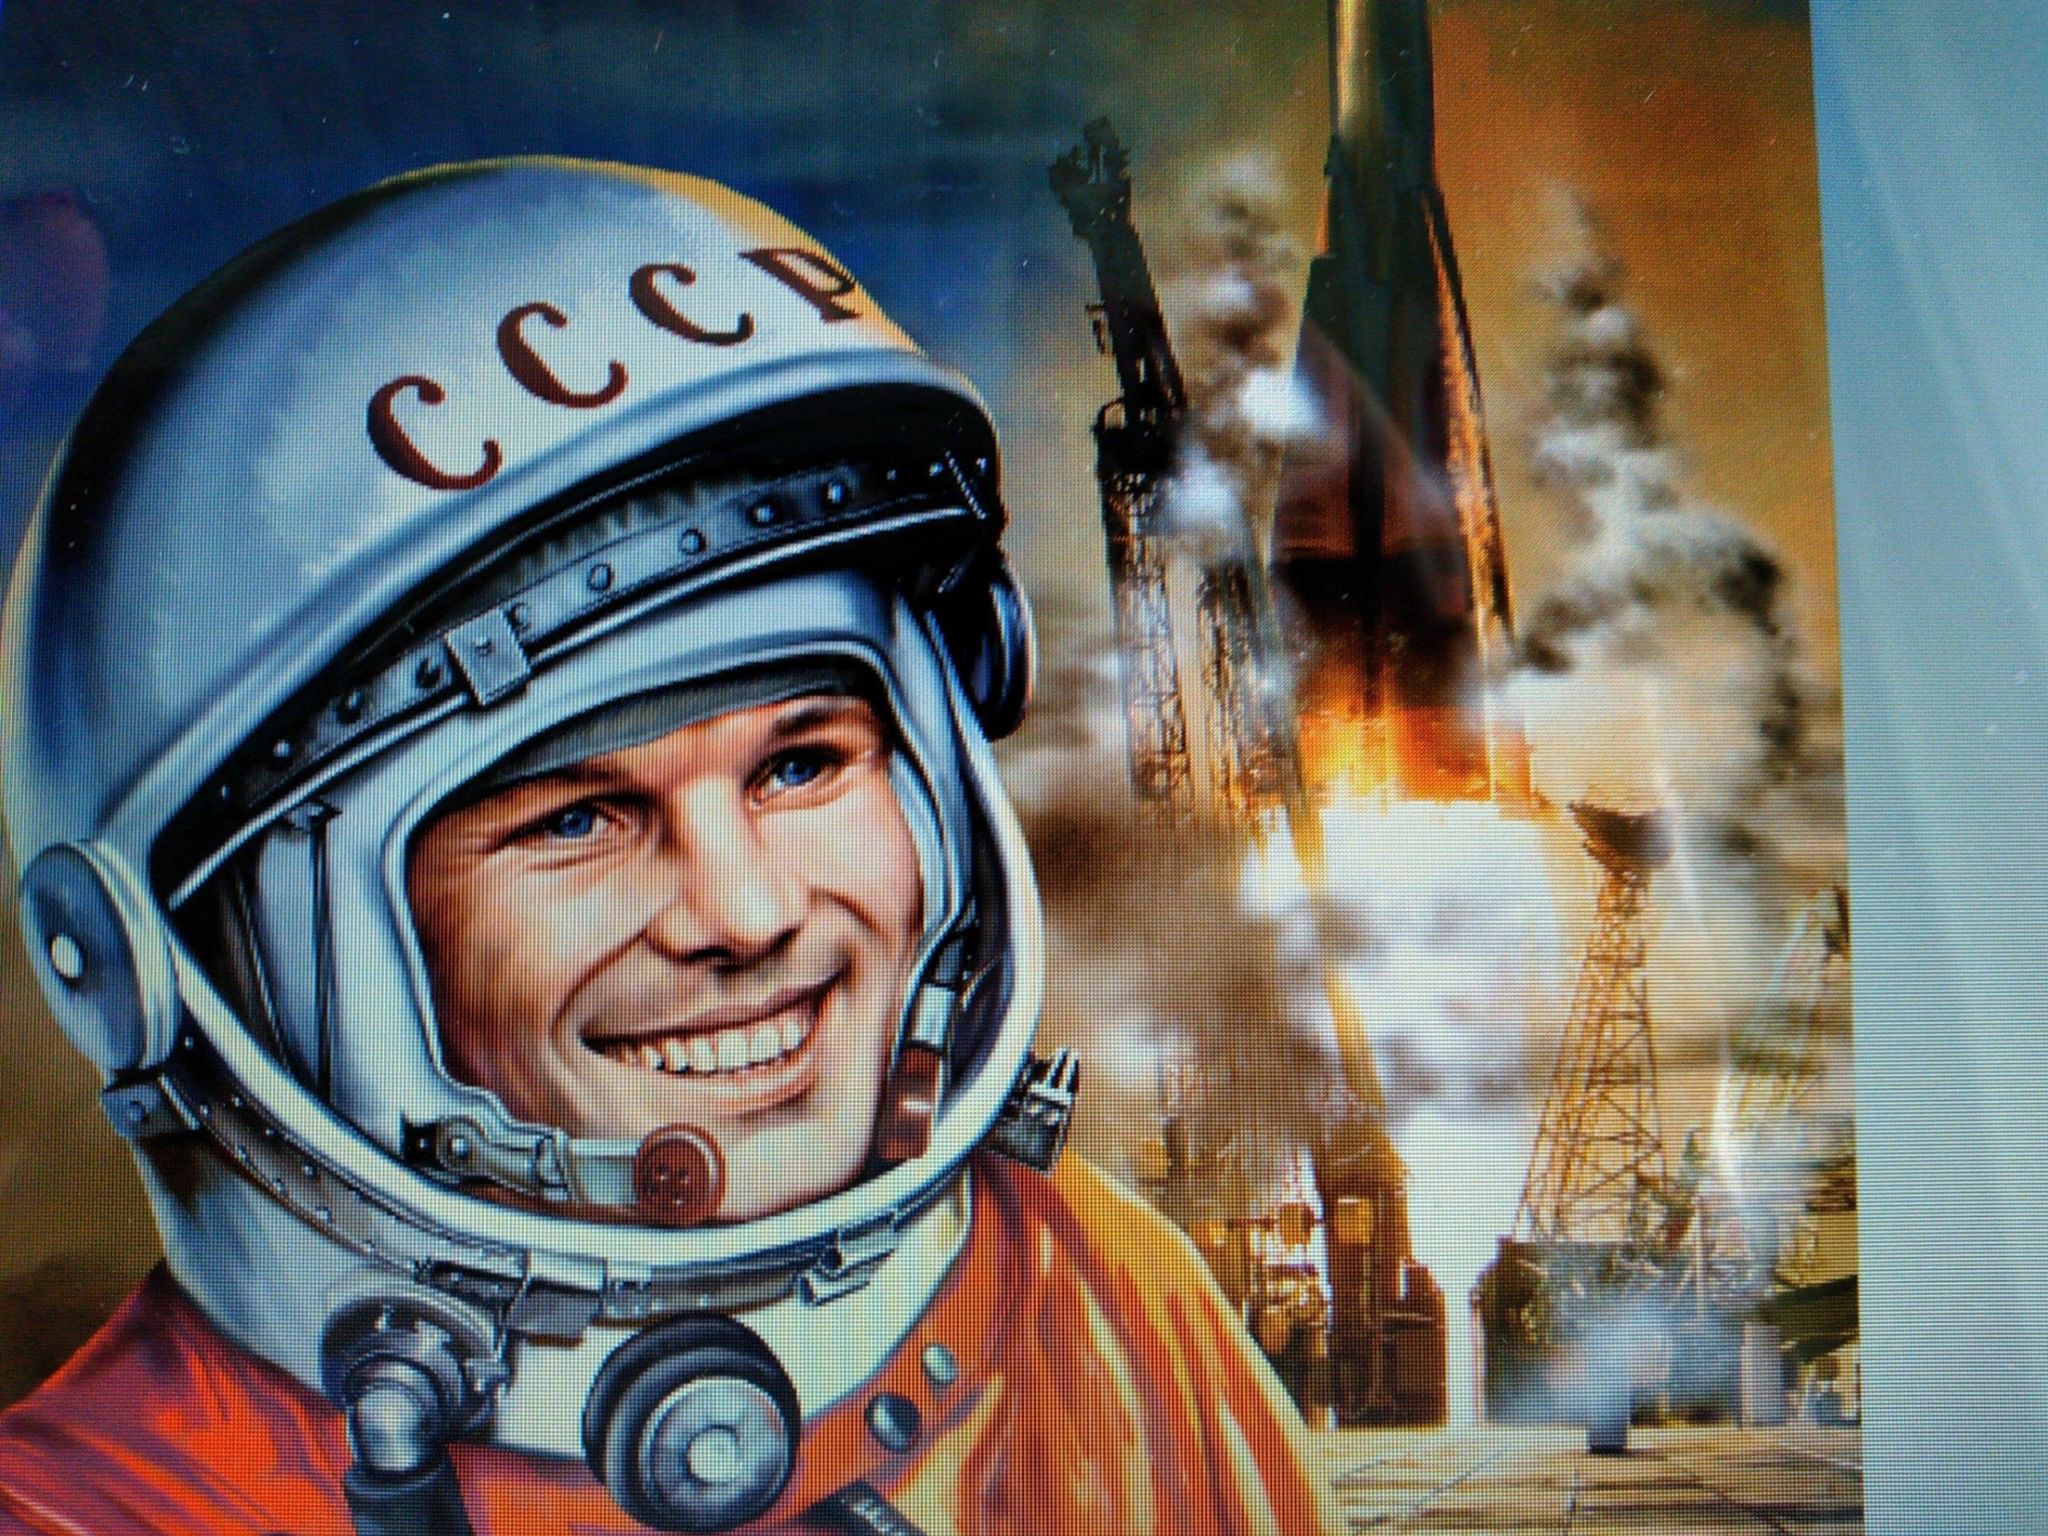 Окружной конкурс «Он первым на планете подняться к звездам смог», посвящённый 90-летию со дня рождения Ю.А. Гагарина.